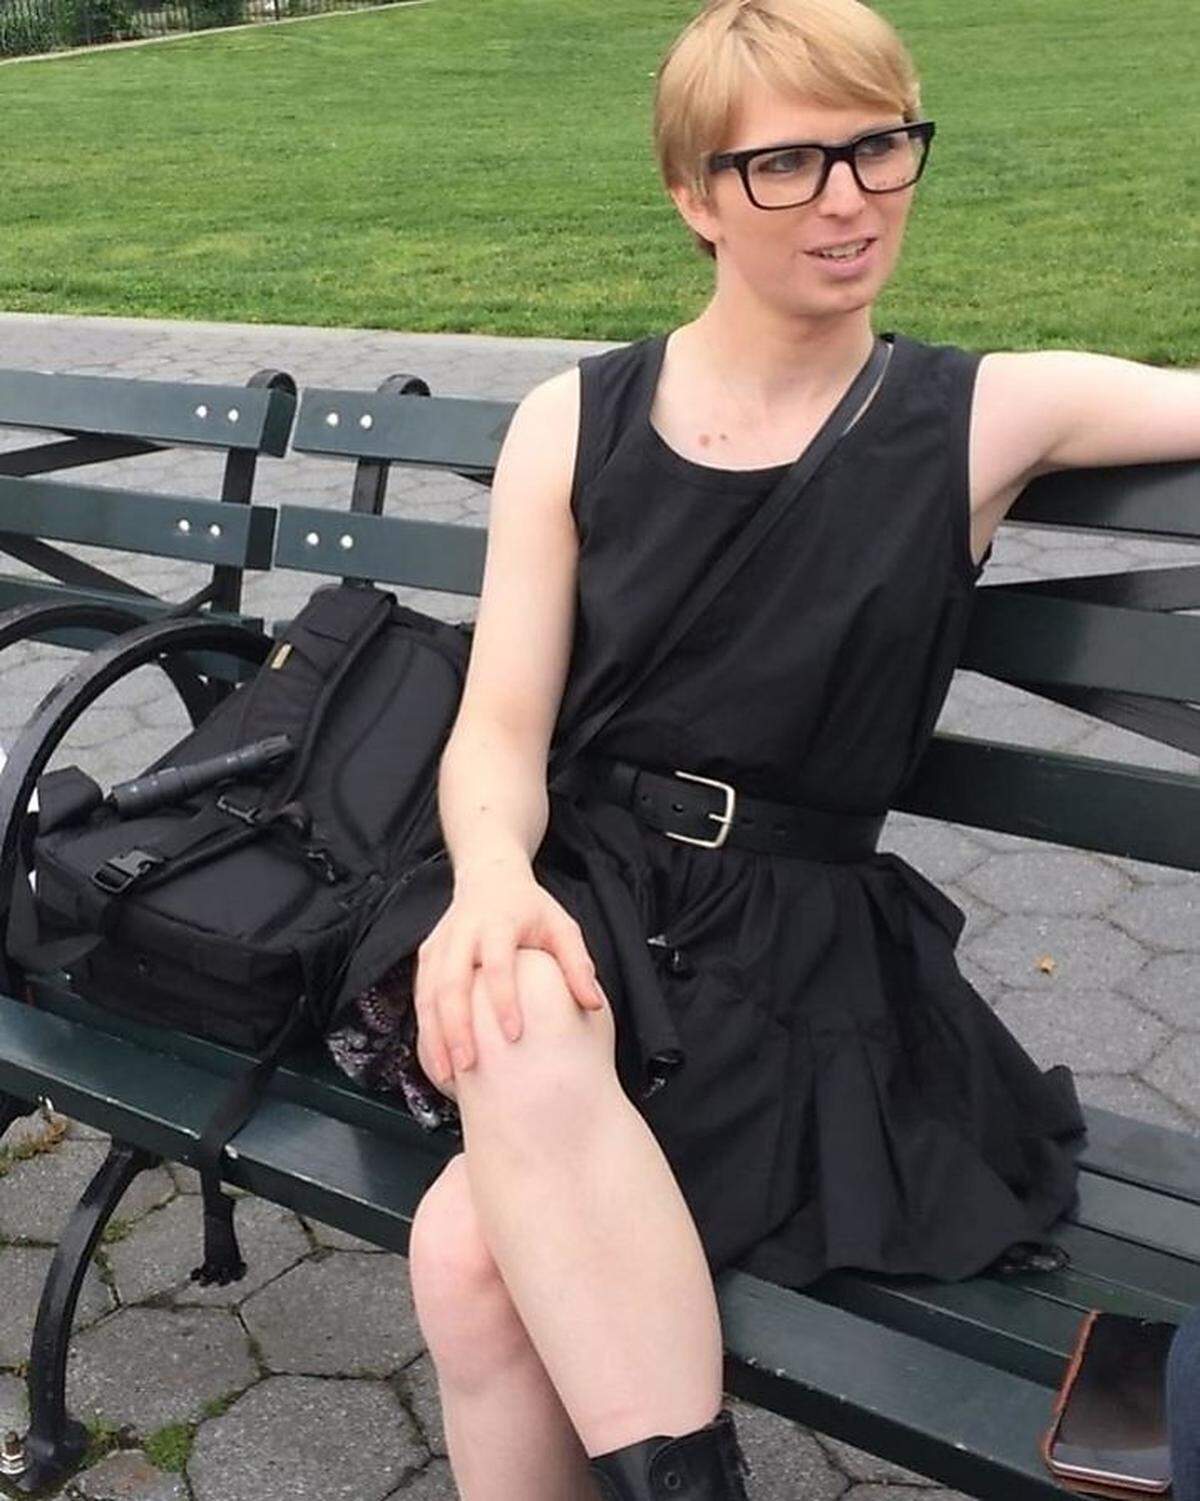 Ihren Tag im Park habe sie etwa in einem "Neo-Cyberpunk"-Outfit genossen, wie sie auf Instagram unter dieses Foto schrieb.